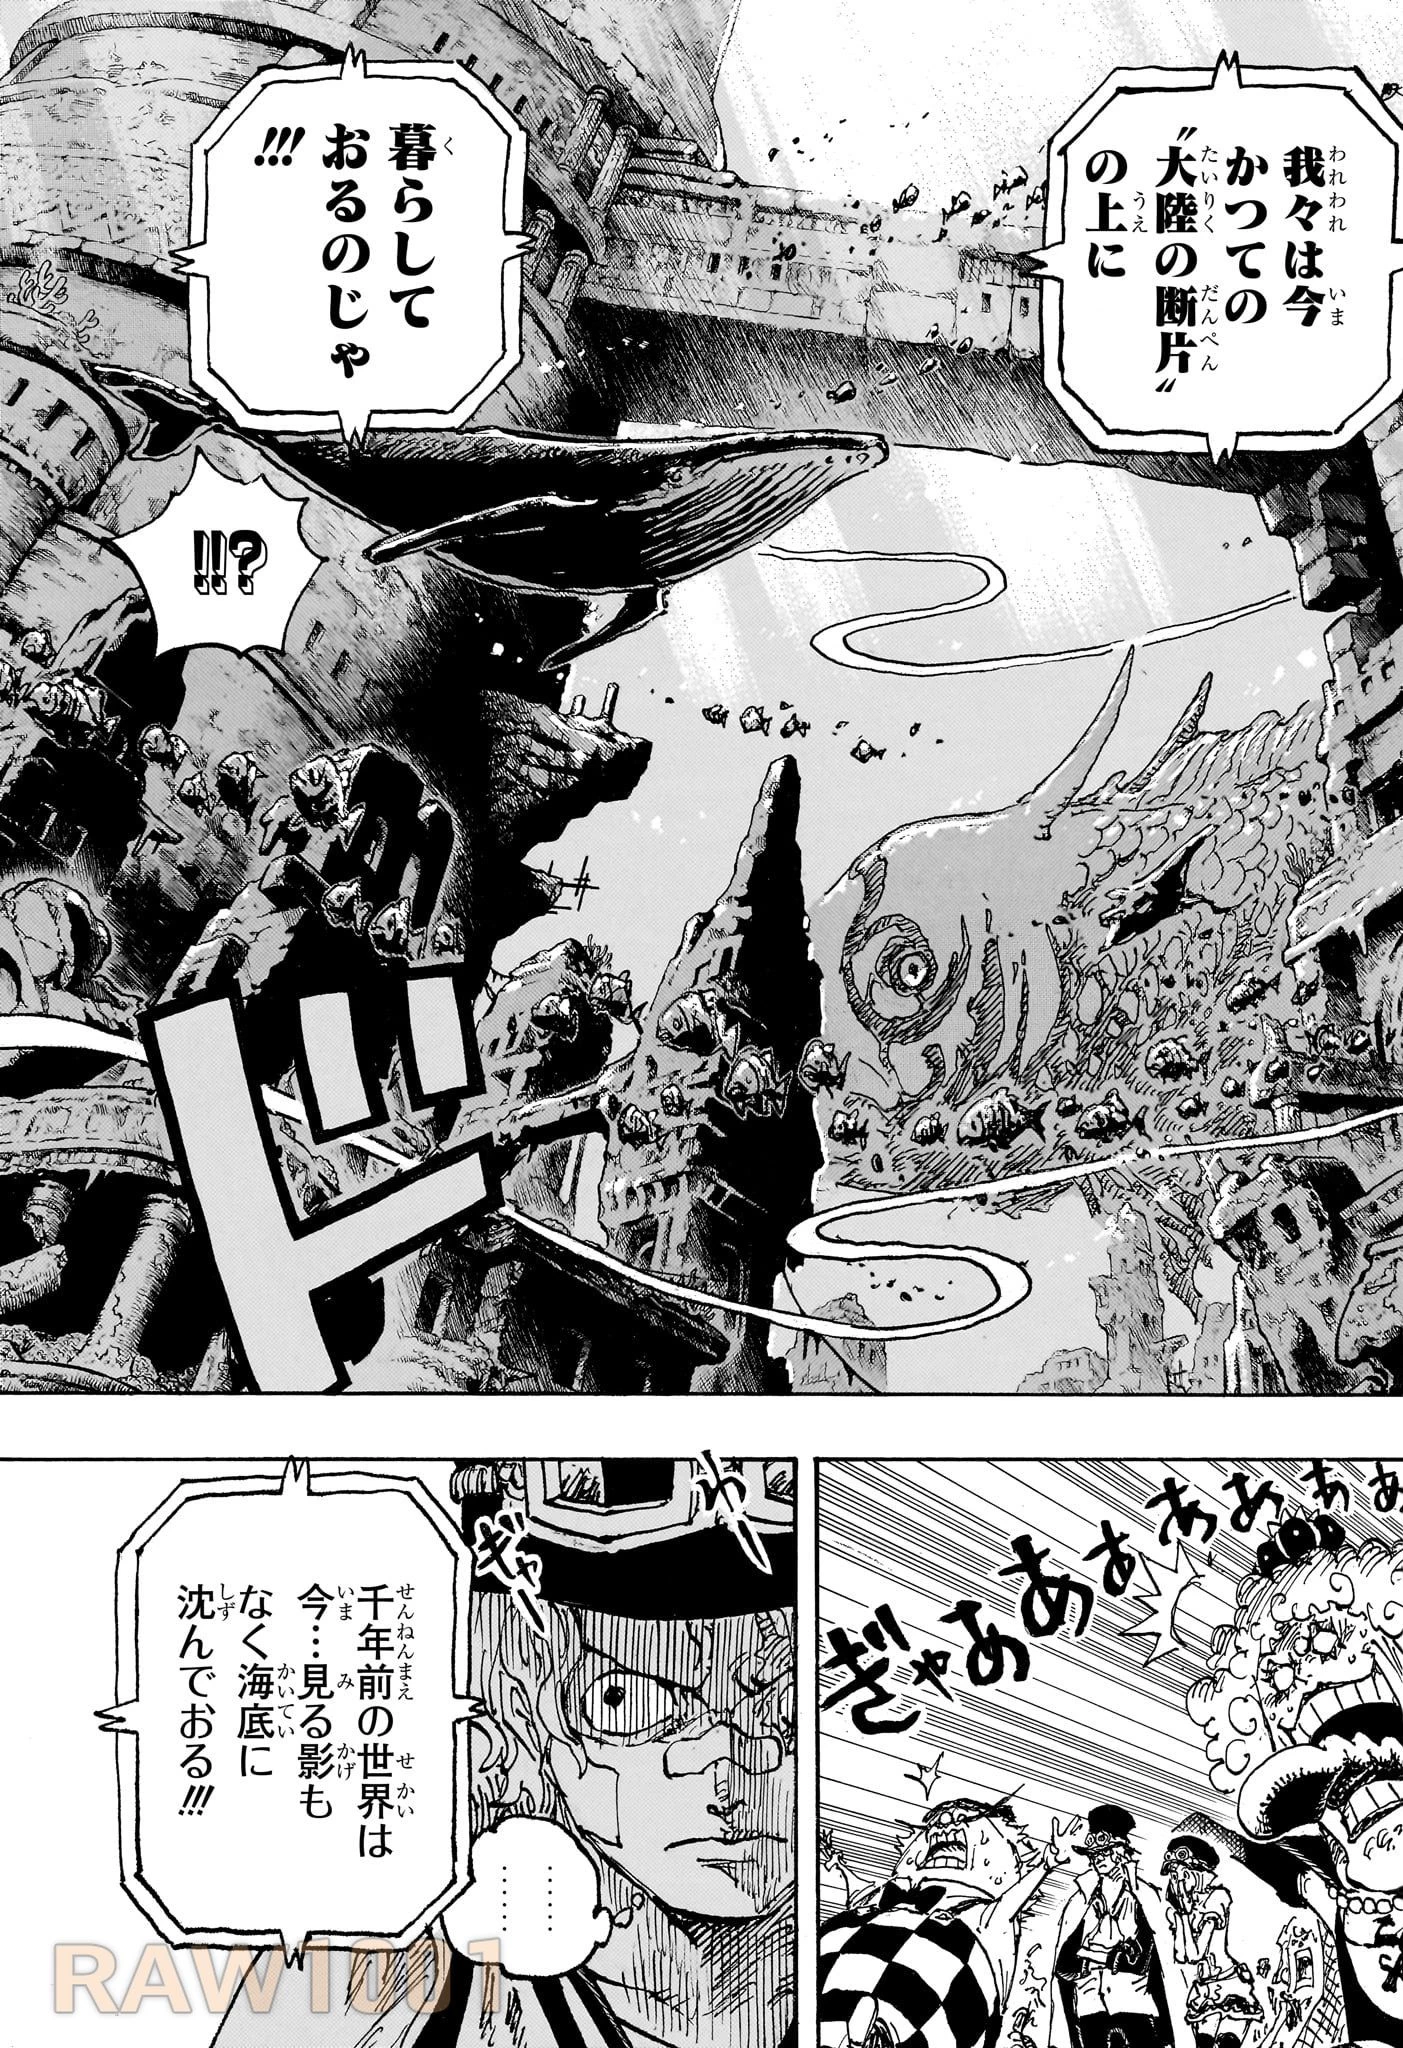 ワンピース 第1115話 Raw - Mangakoma - 漫画koma - 漫画raw